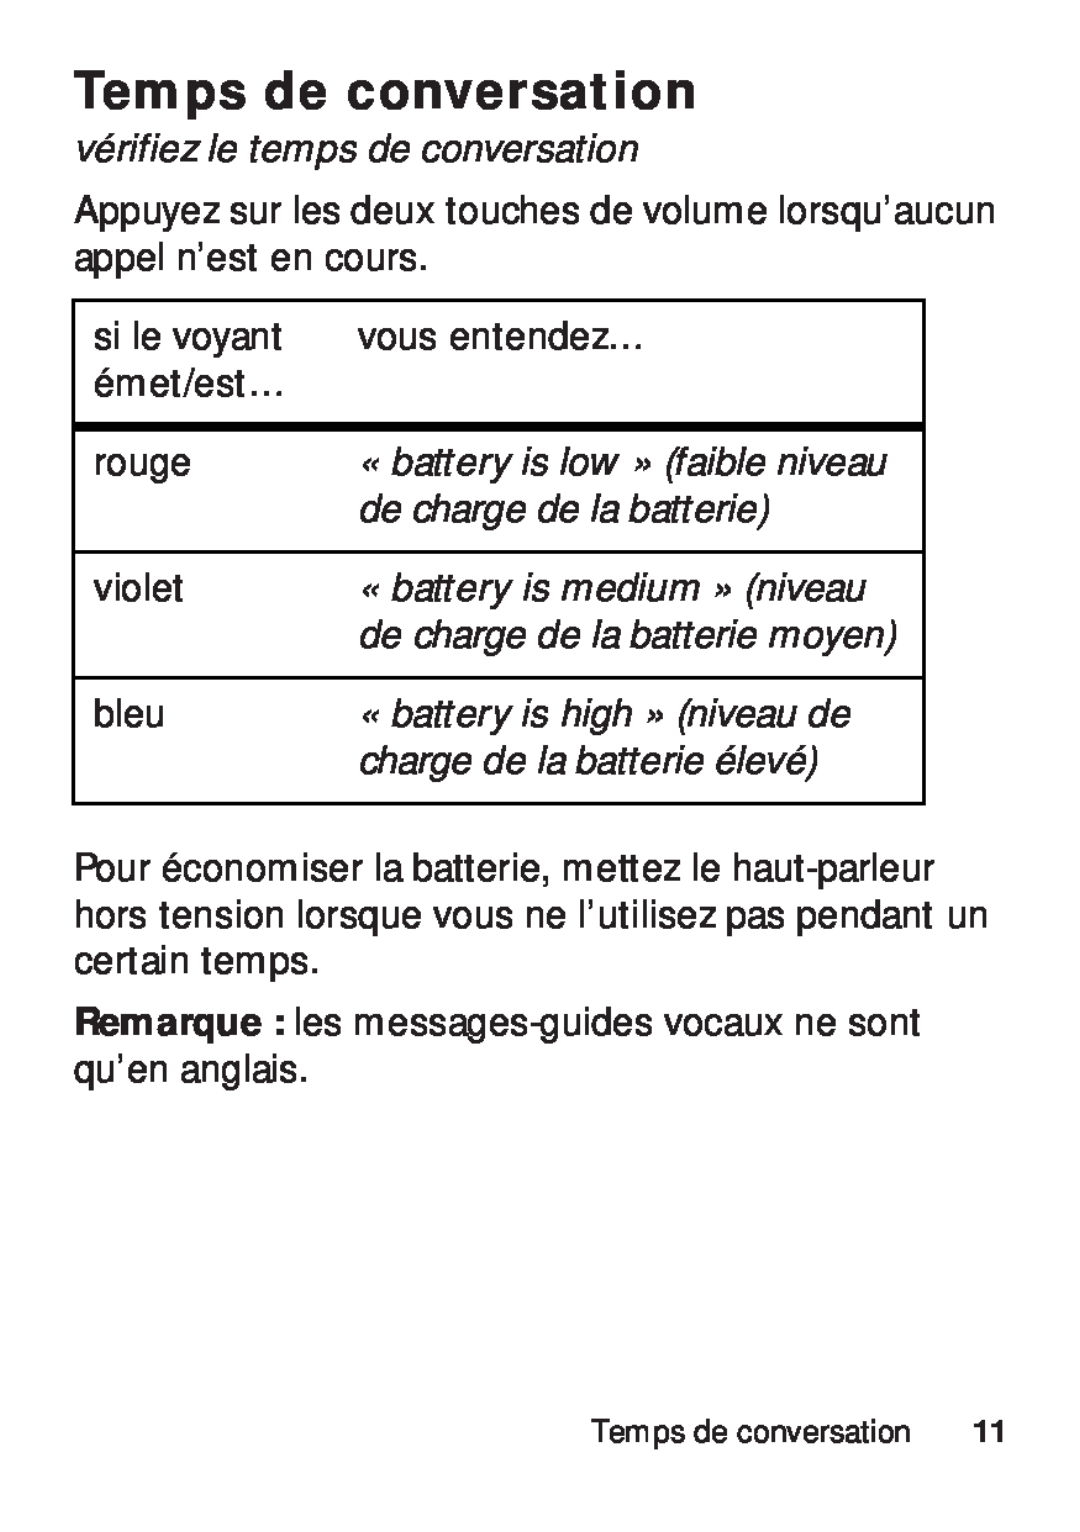 Motorola TX500 manual Temps de conversation, vérifiez le temps de conversation, de charge de la batterie 